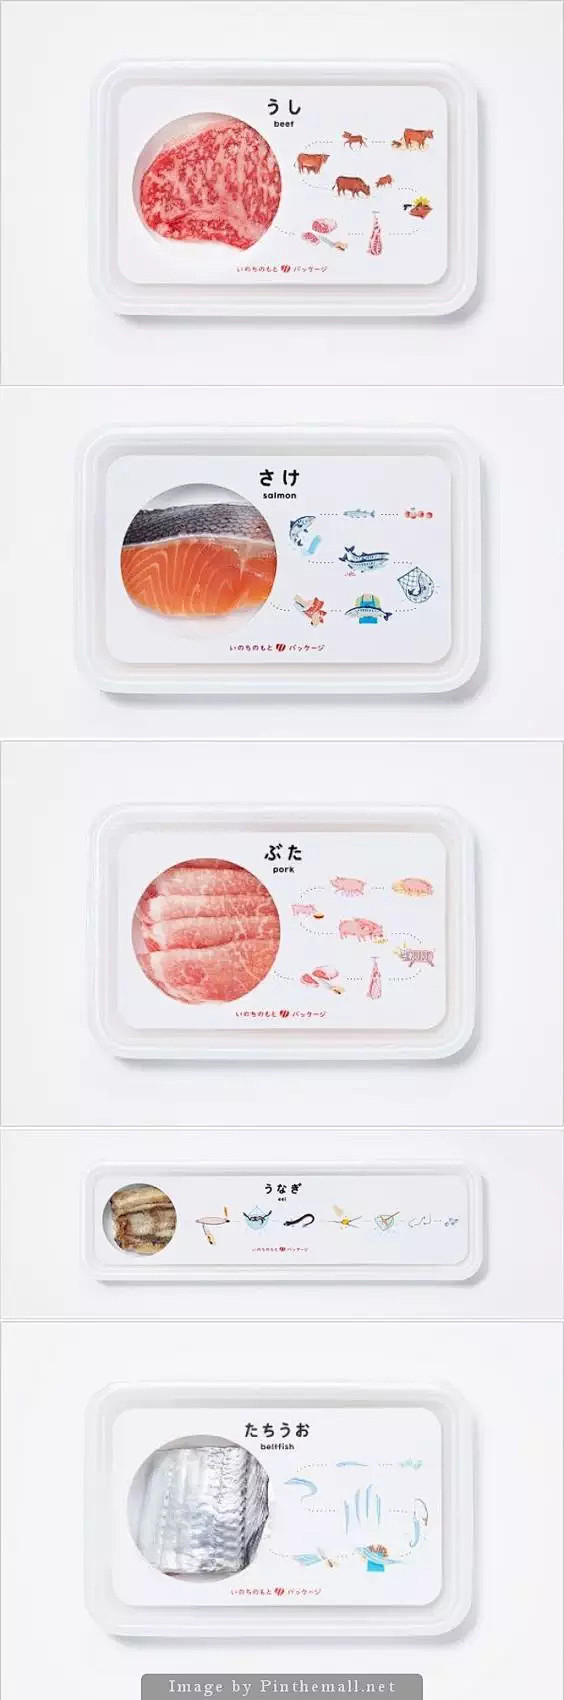 肉类肉制品电商包装设计参考6